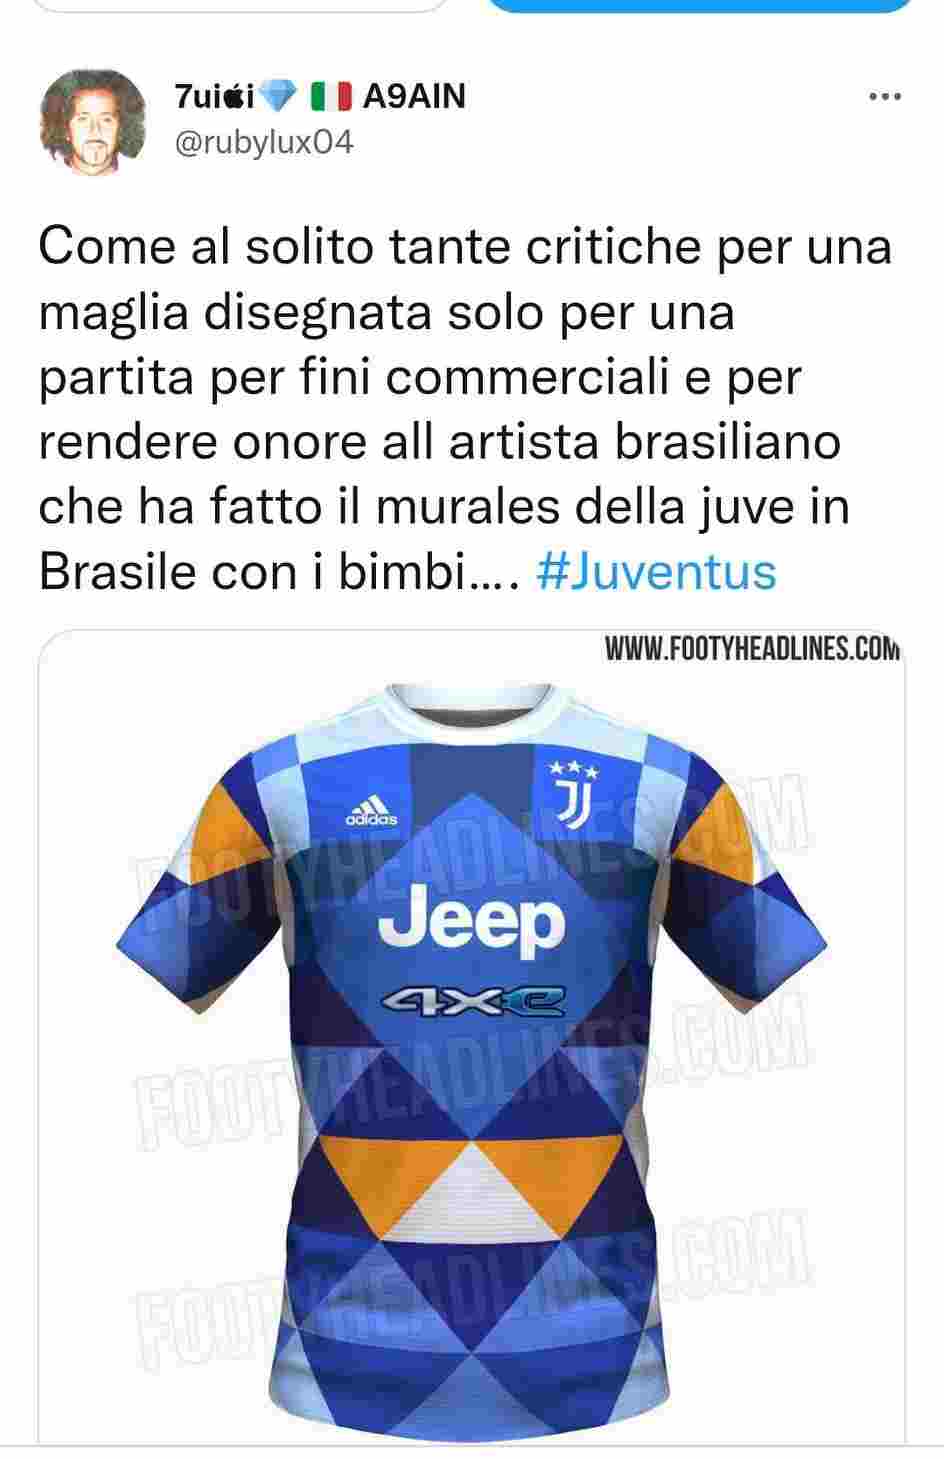 Quarta maglia Juventus (Twitter)